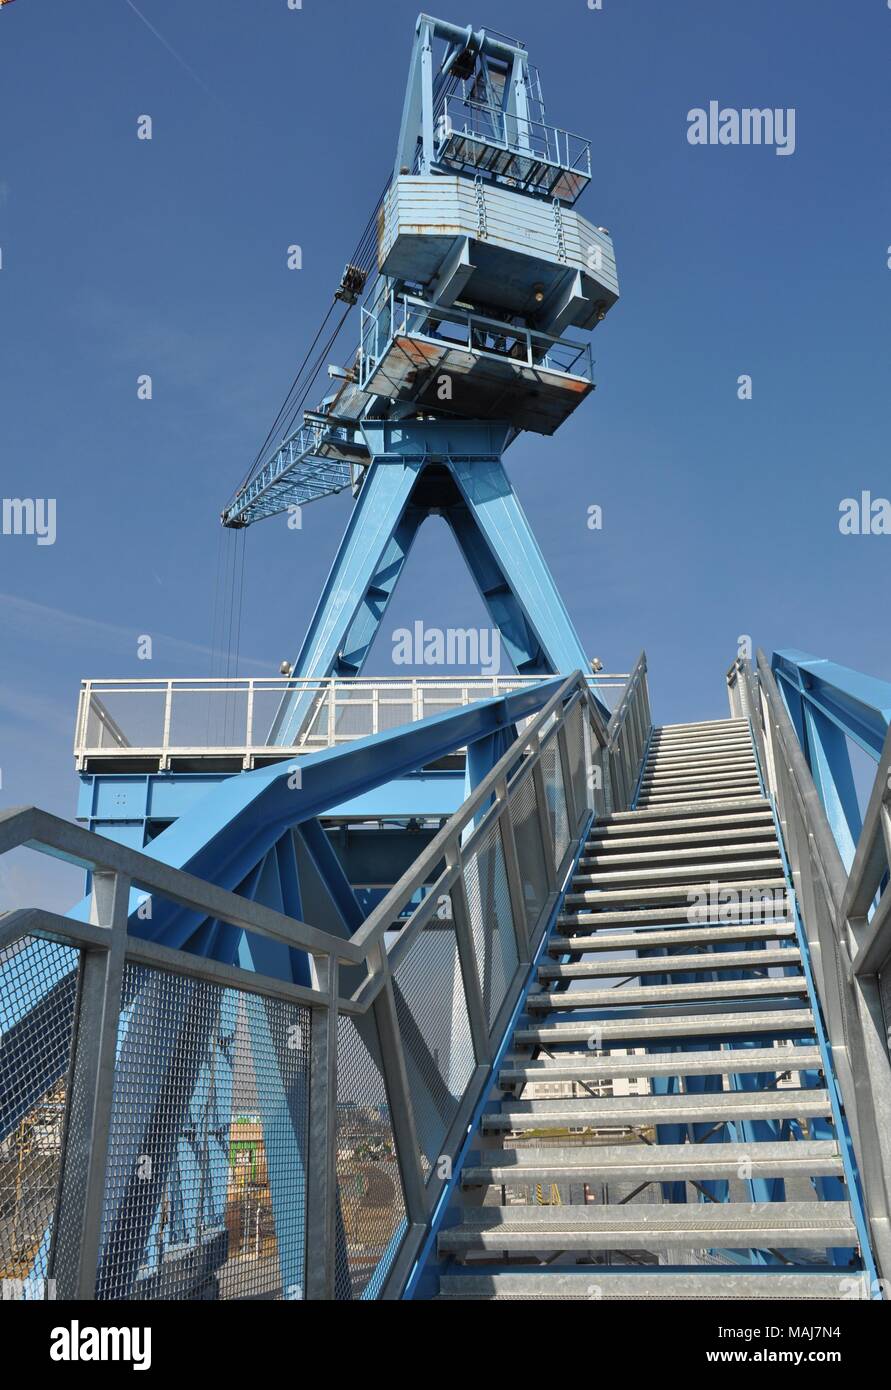 Blue Crane, Hafen Offenbach, Allemagne Banque D'Images